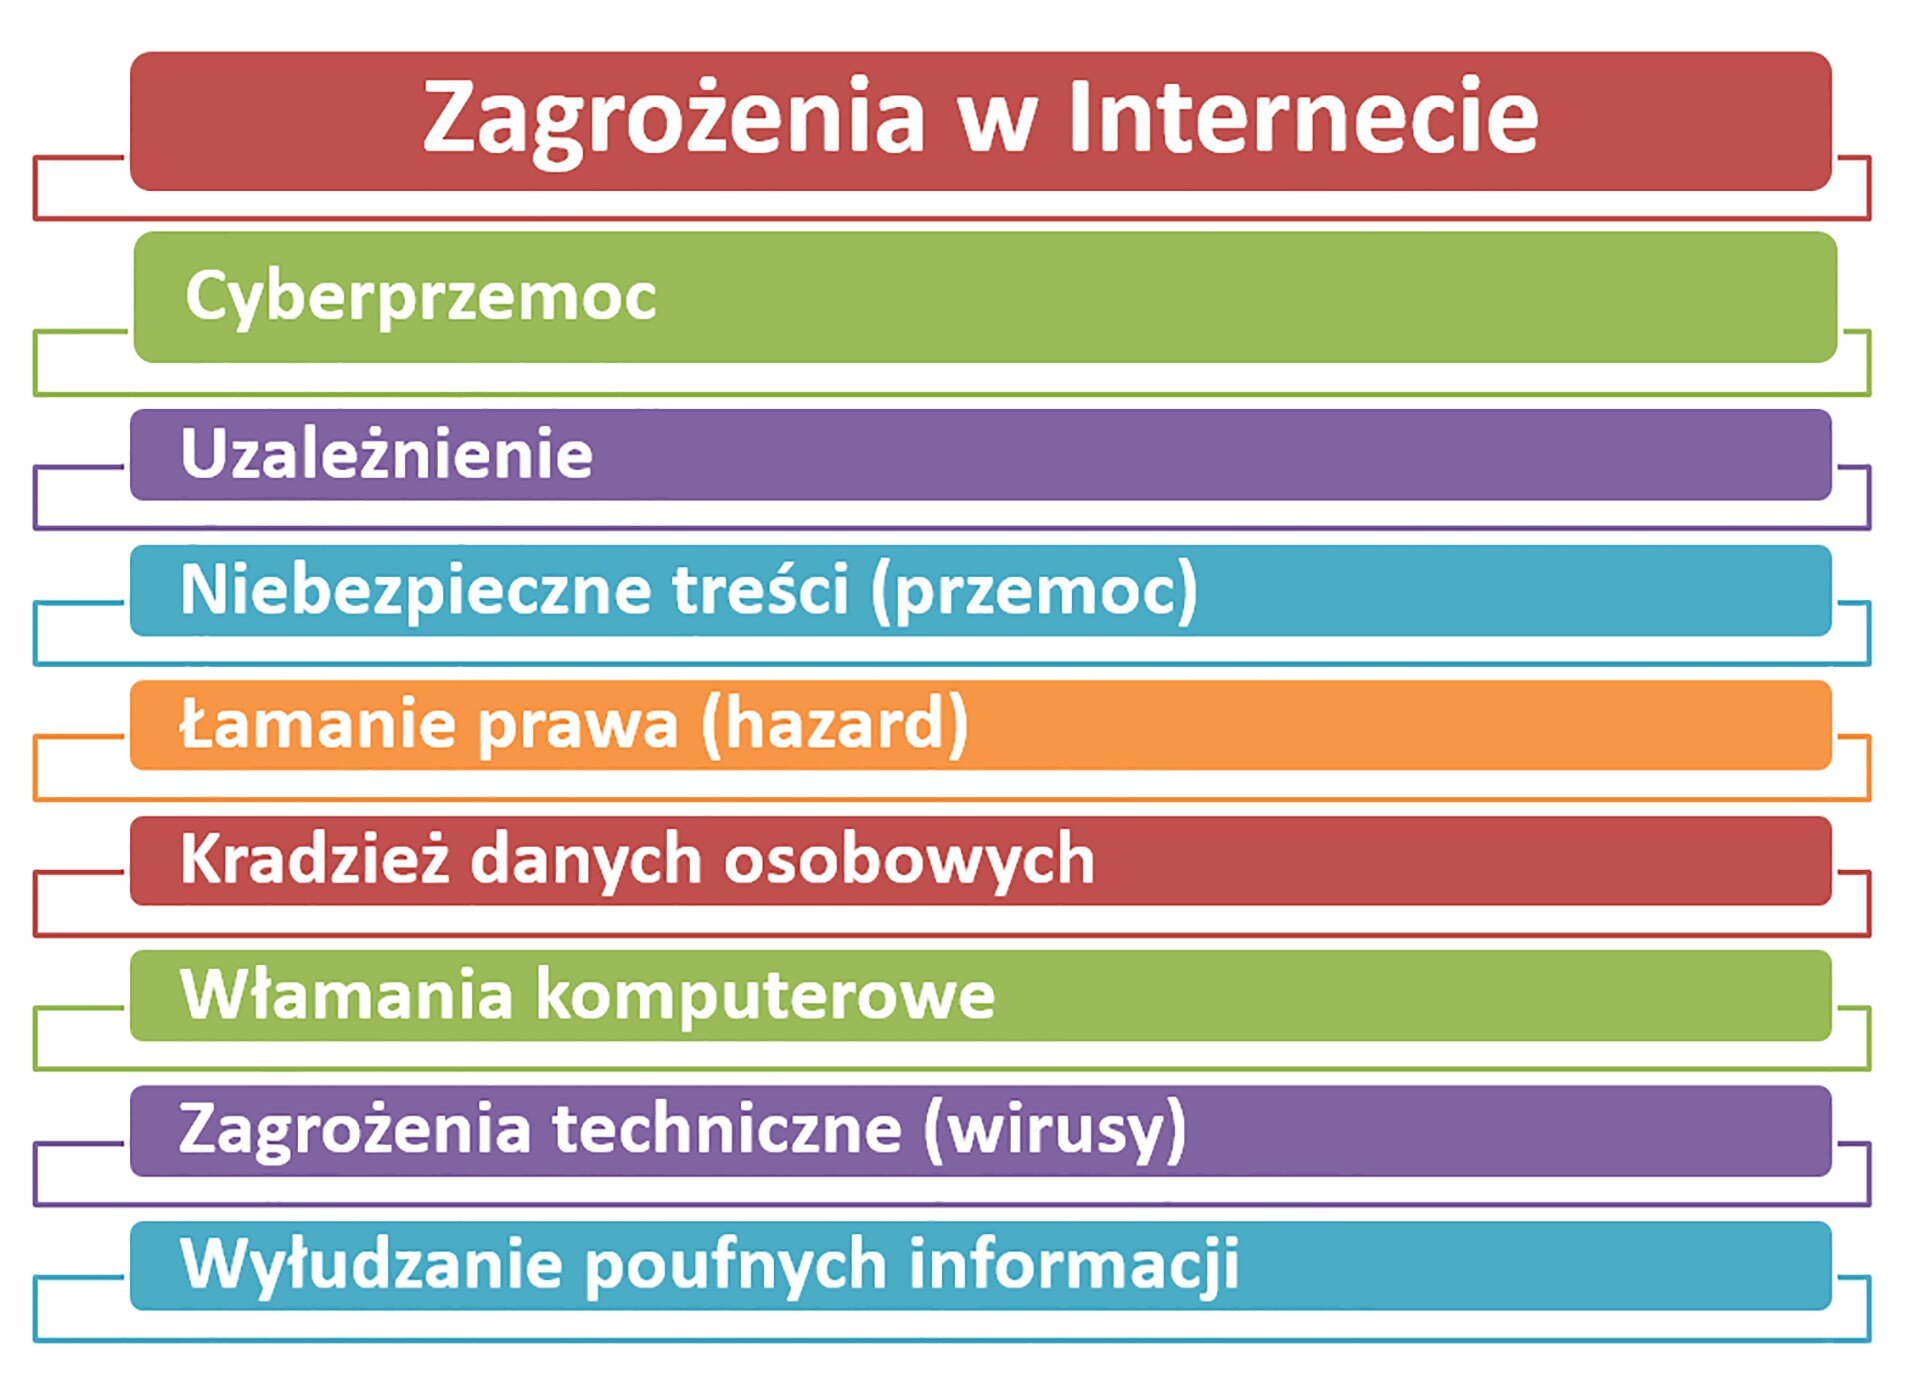 Zrzut tabeli zawierającej wykaz zagrożeń w sieci internetowej